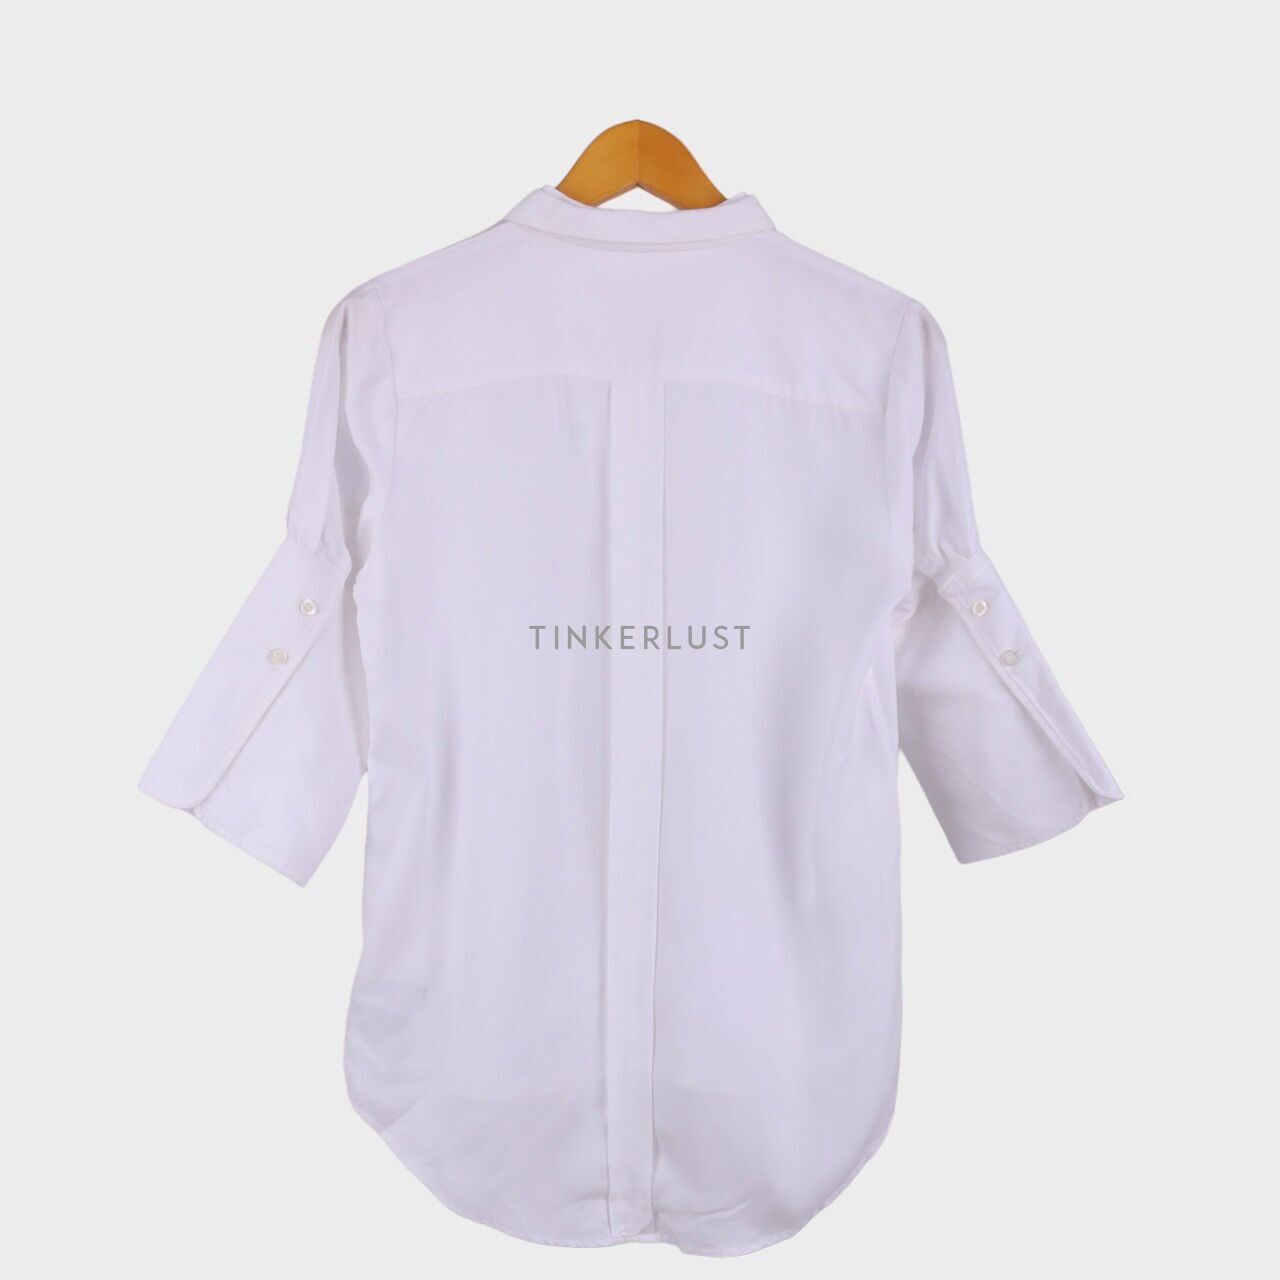 MASSHIRO&Co. by matters White Shirt